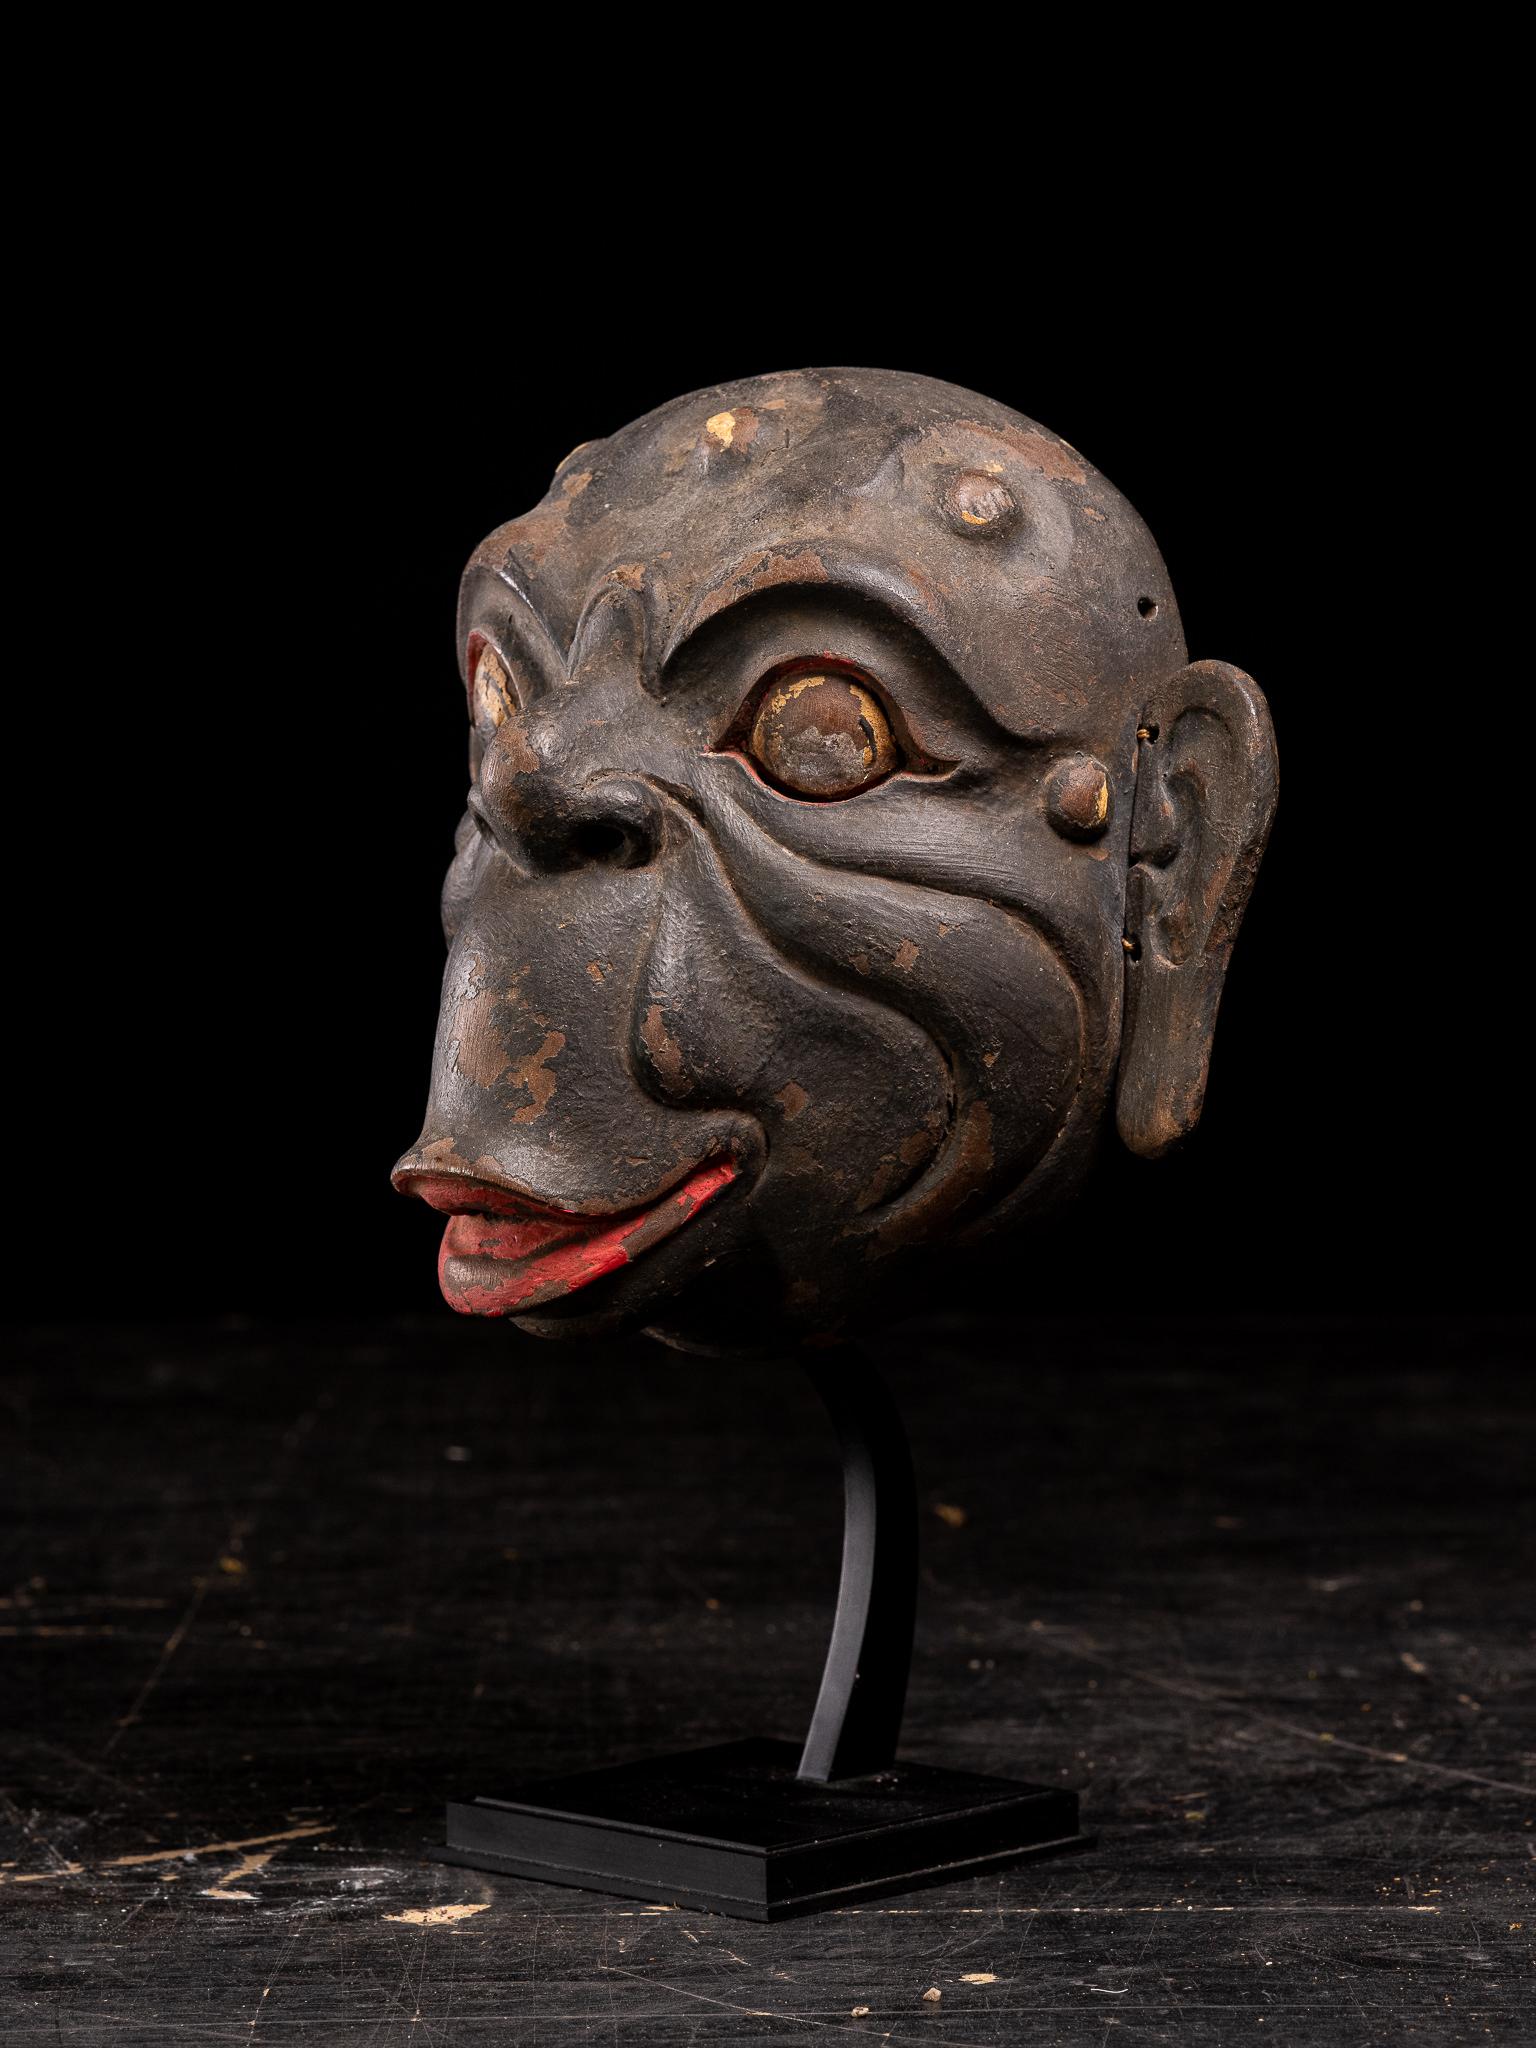 Masque de singe balinais inhabituel - très probablement une représentation d'Hanuman

Voici plus d'informations sur Ubud. La fabrication de masques est l'une des plus anciennes formes d'art au monde. À Bali, les masques (topeng ou tapel) sont